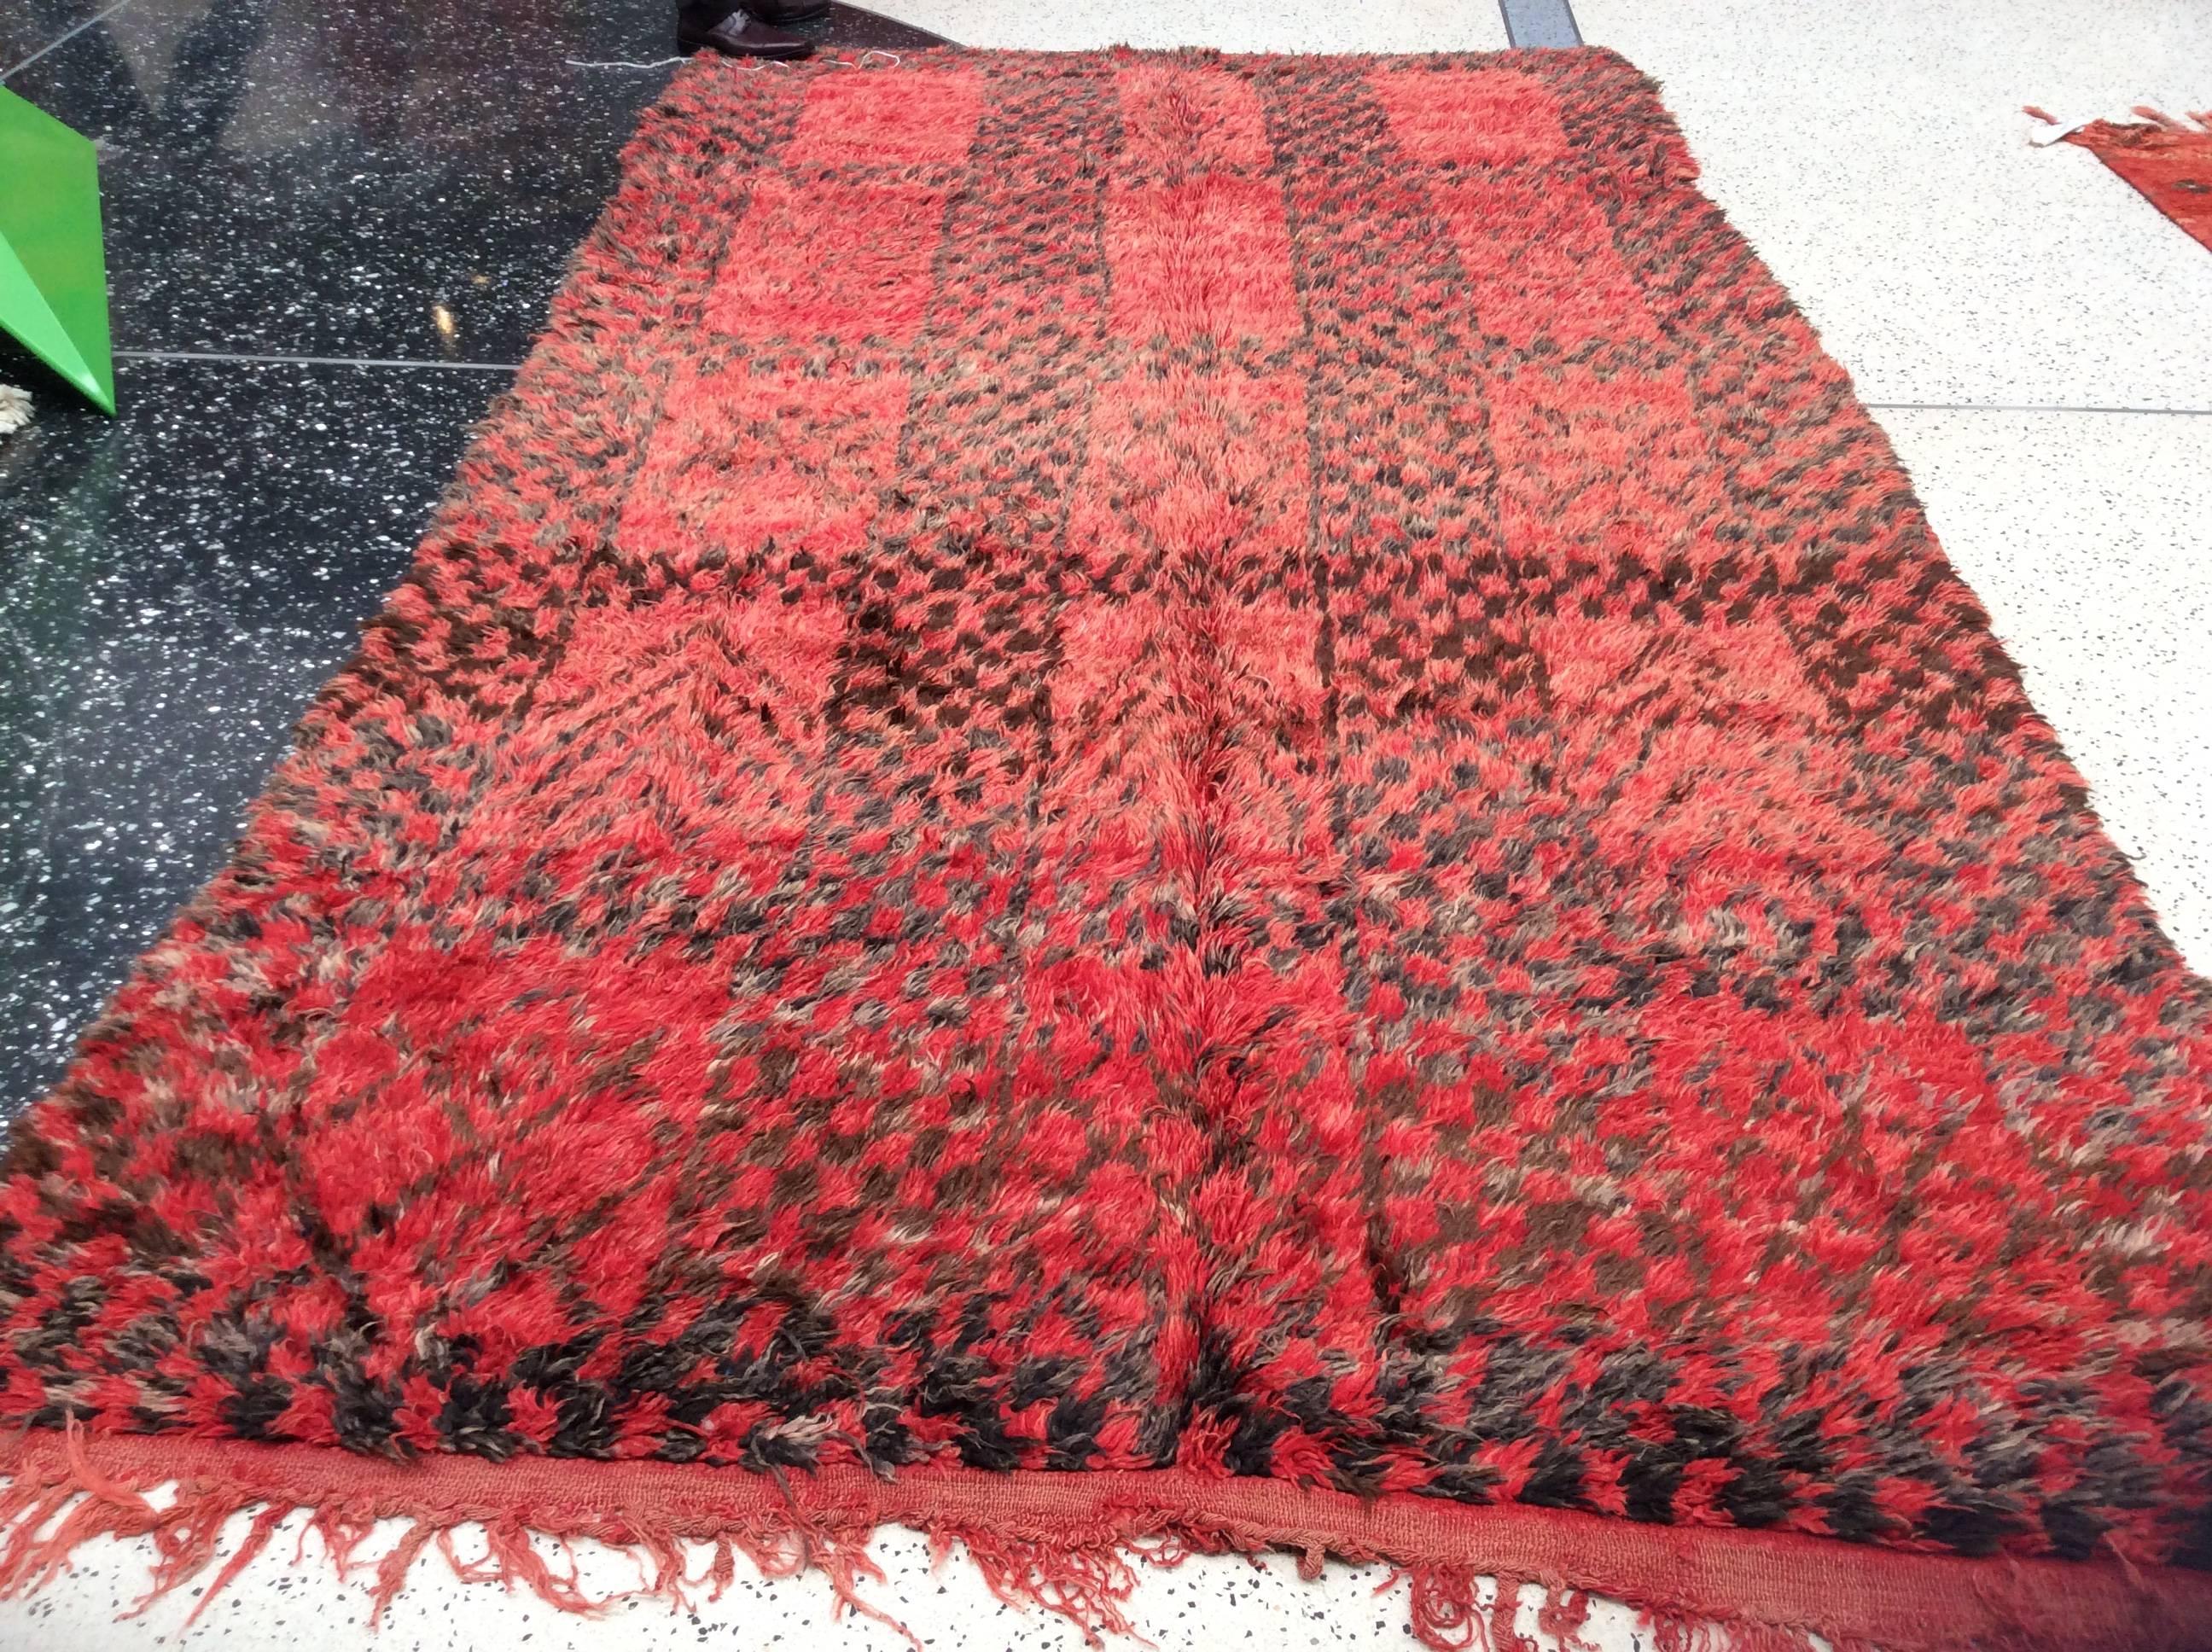 Red Moroccan Berber rug.